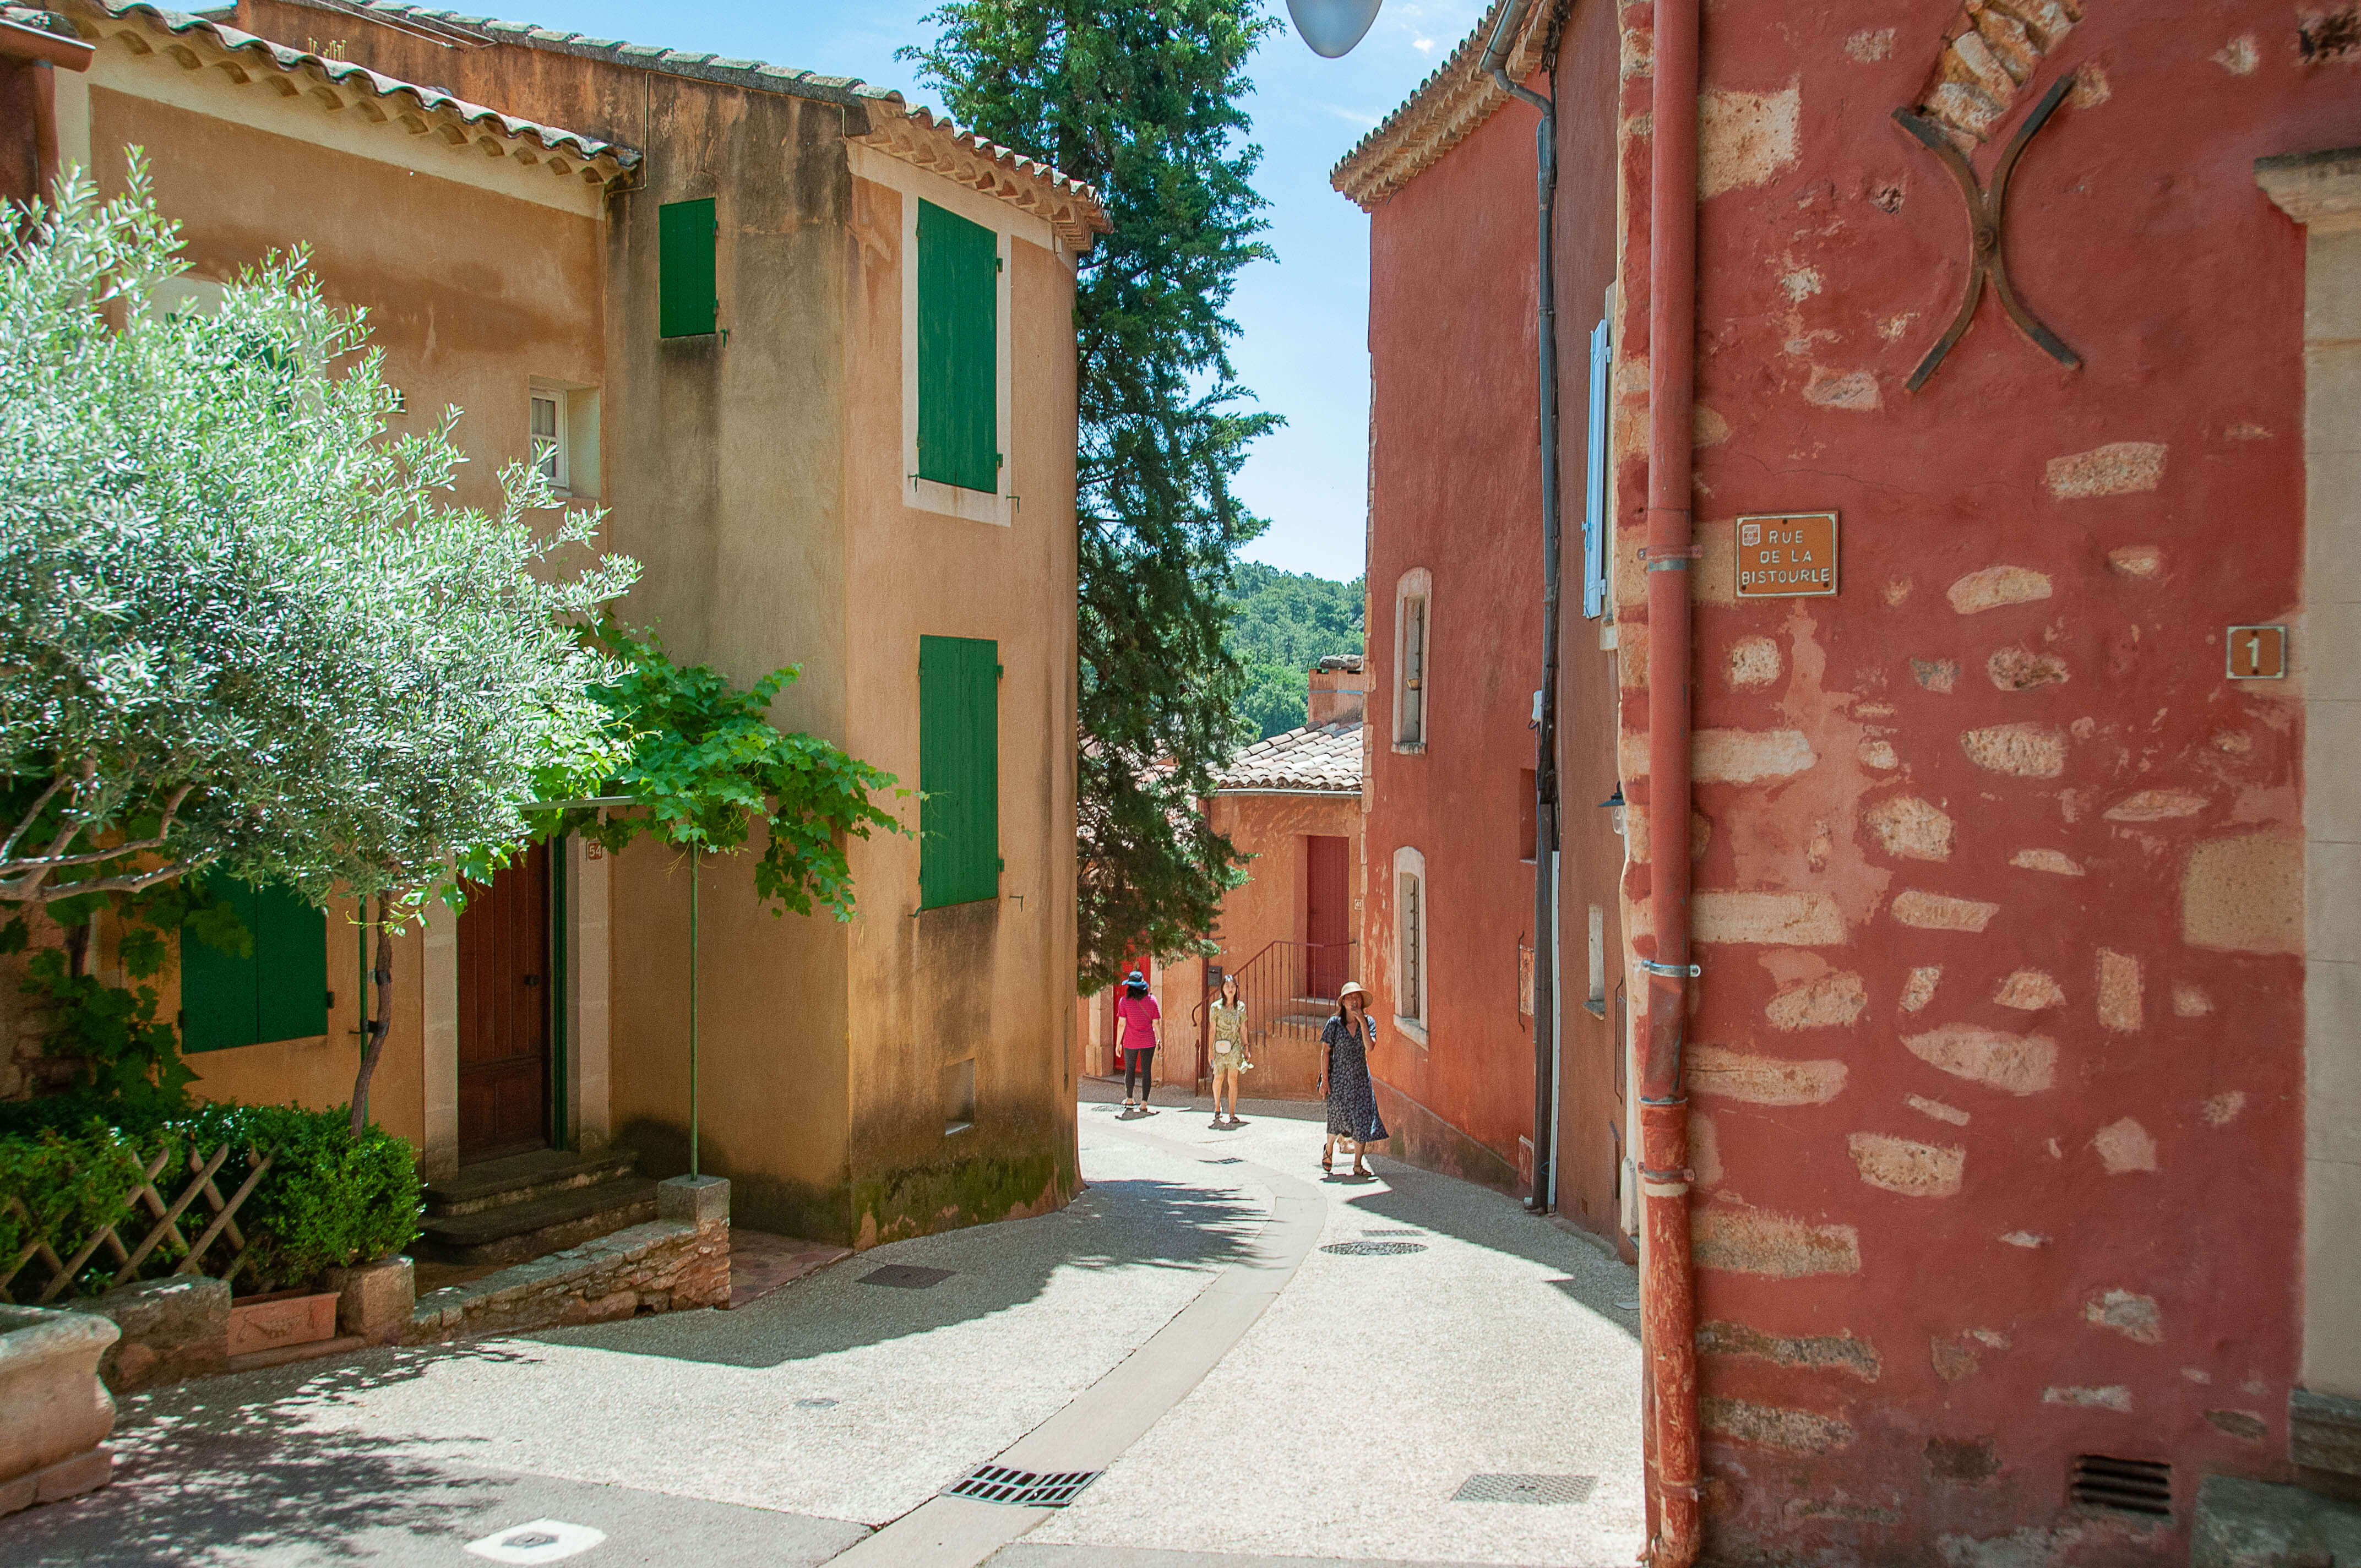 Une ruelle typique de village avec les murs enduits d'ocre